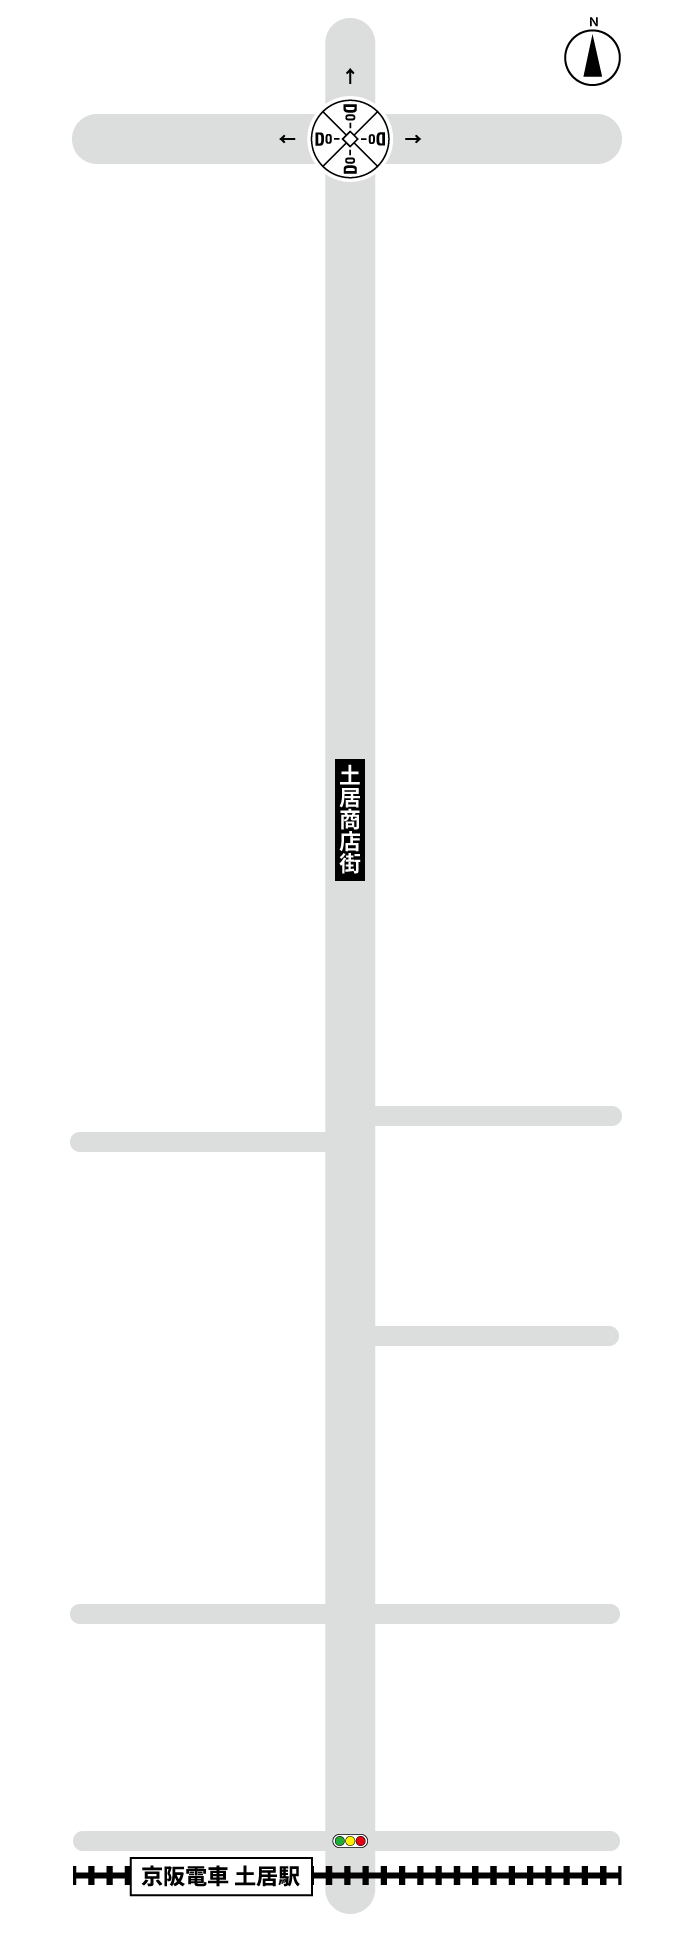 土居商店街マップ